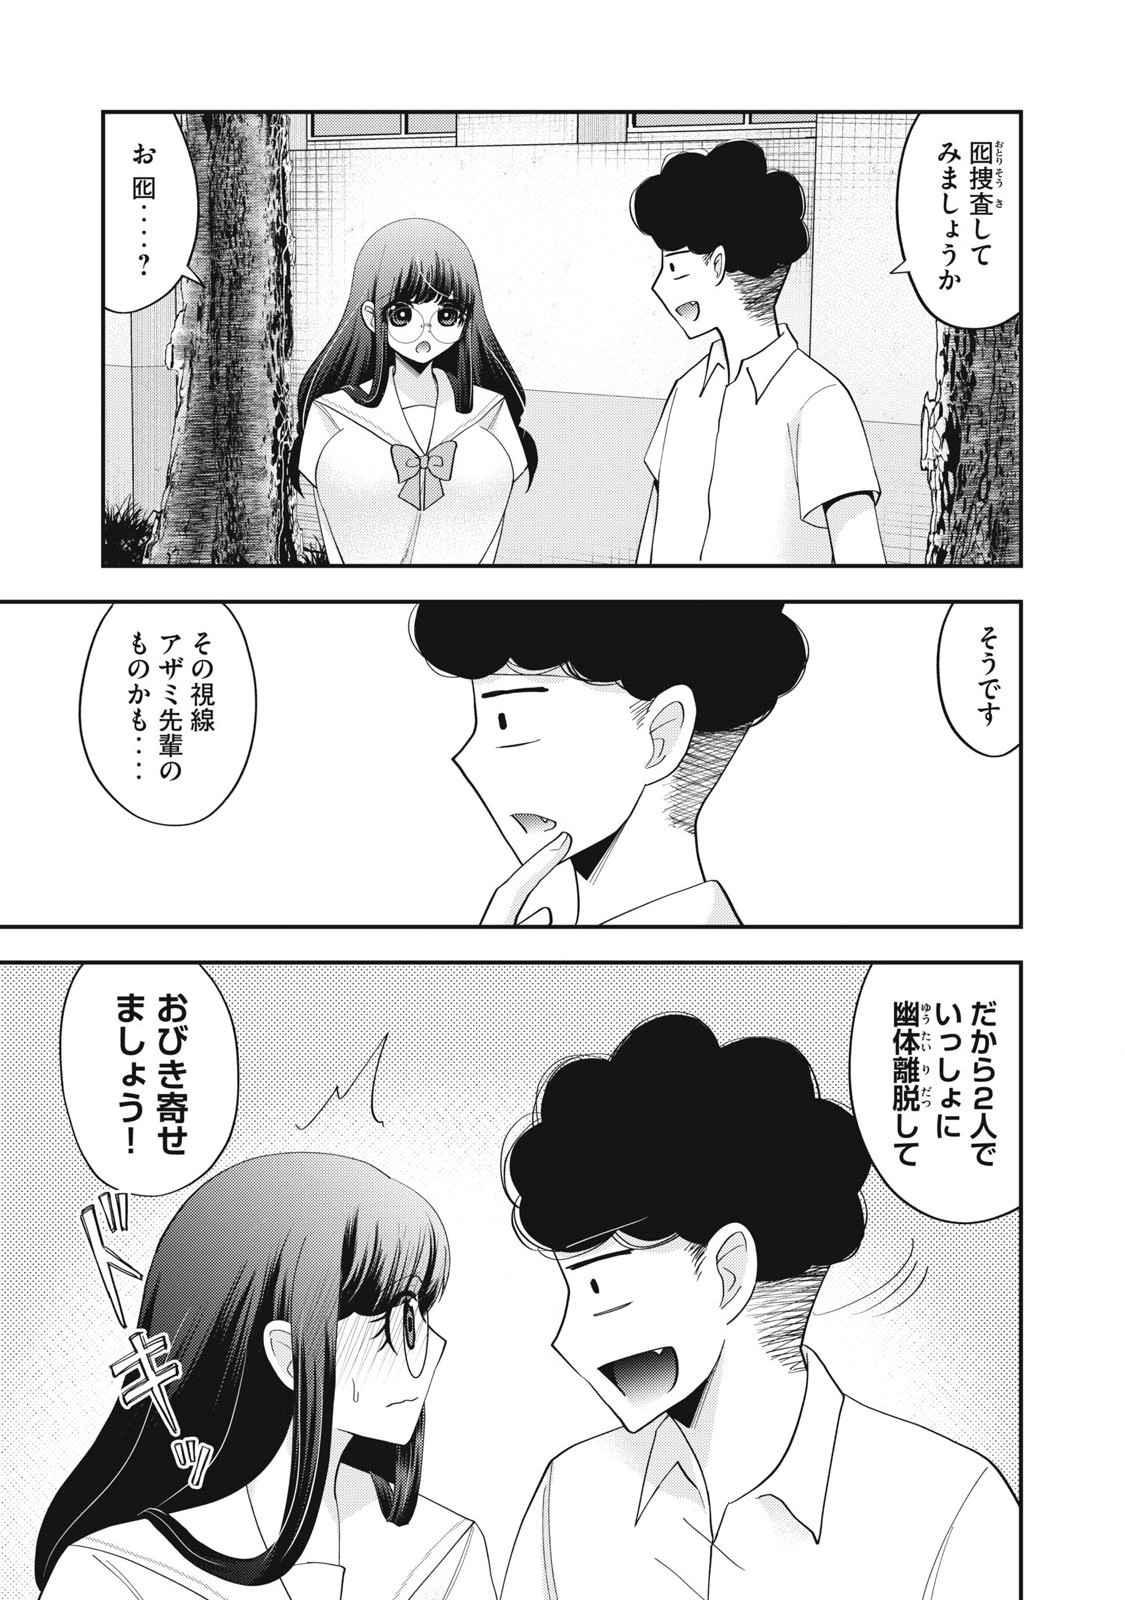 Yumeutsutsu no Hana no Sono - Chapter 22 - Page 1